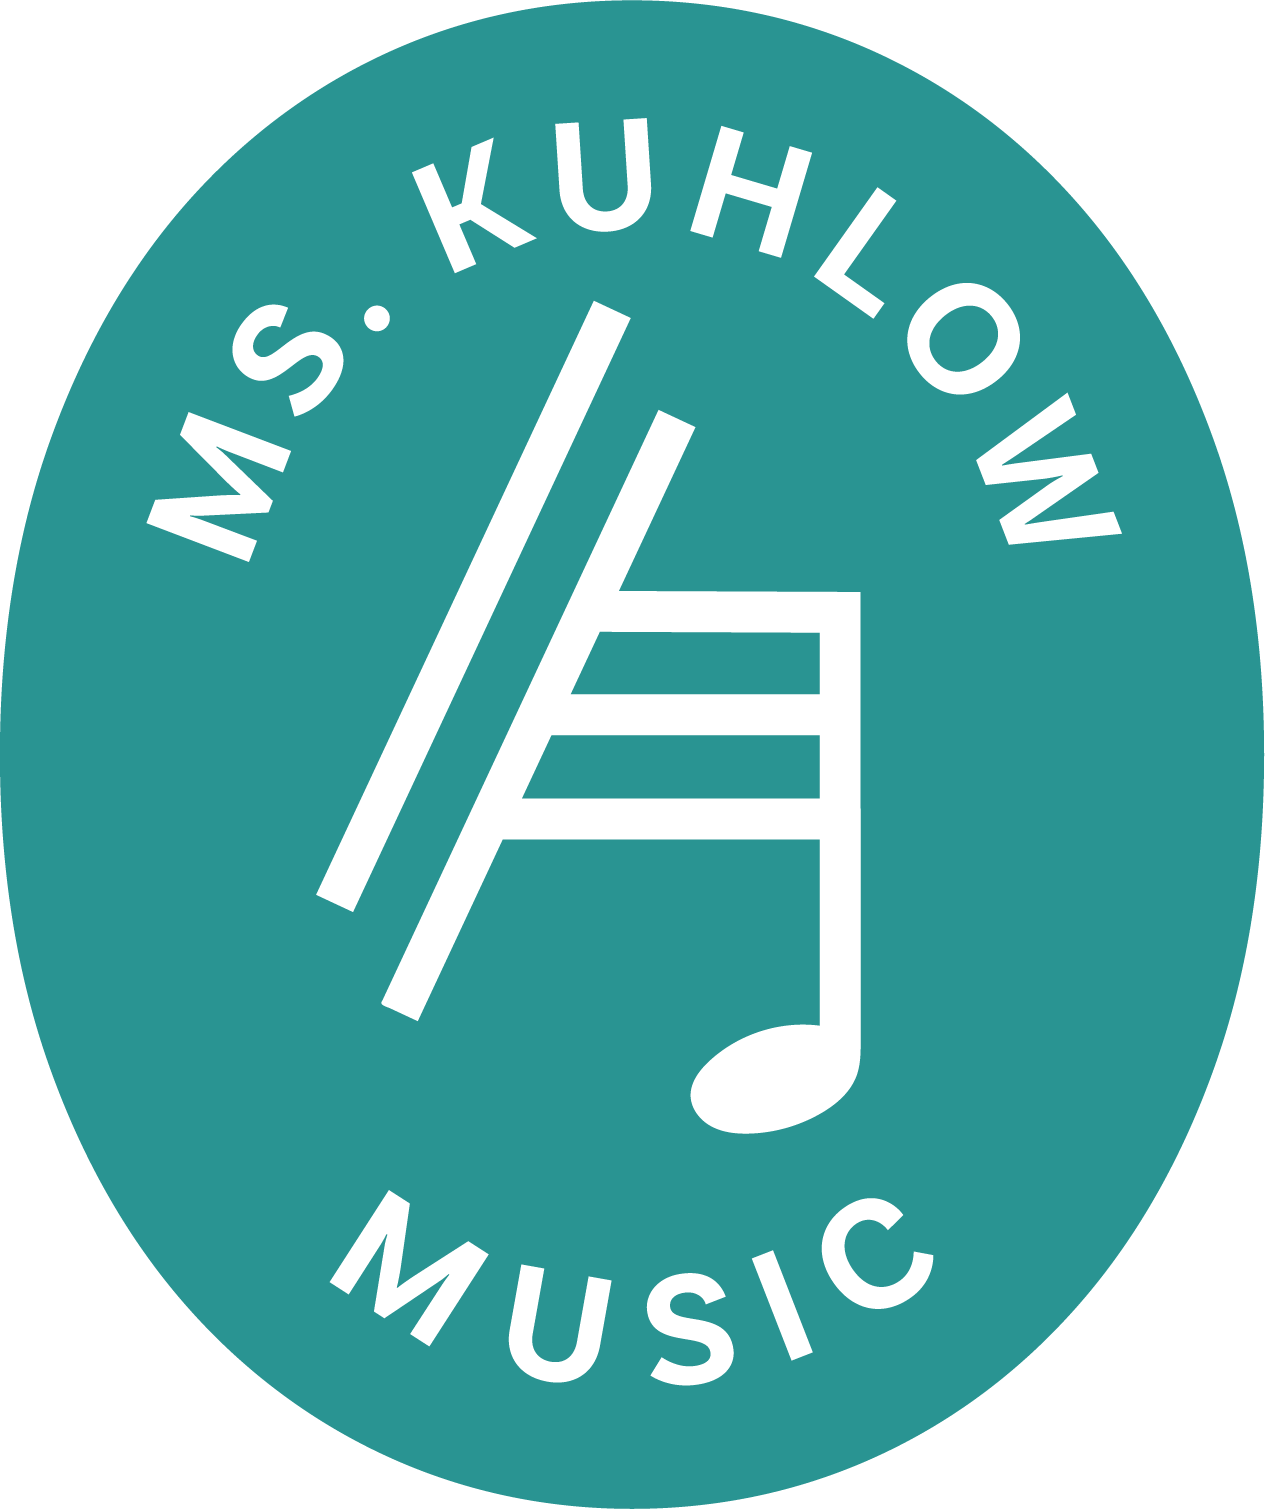 Ms. Kuhlow Music